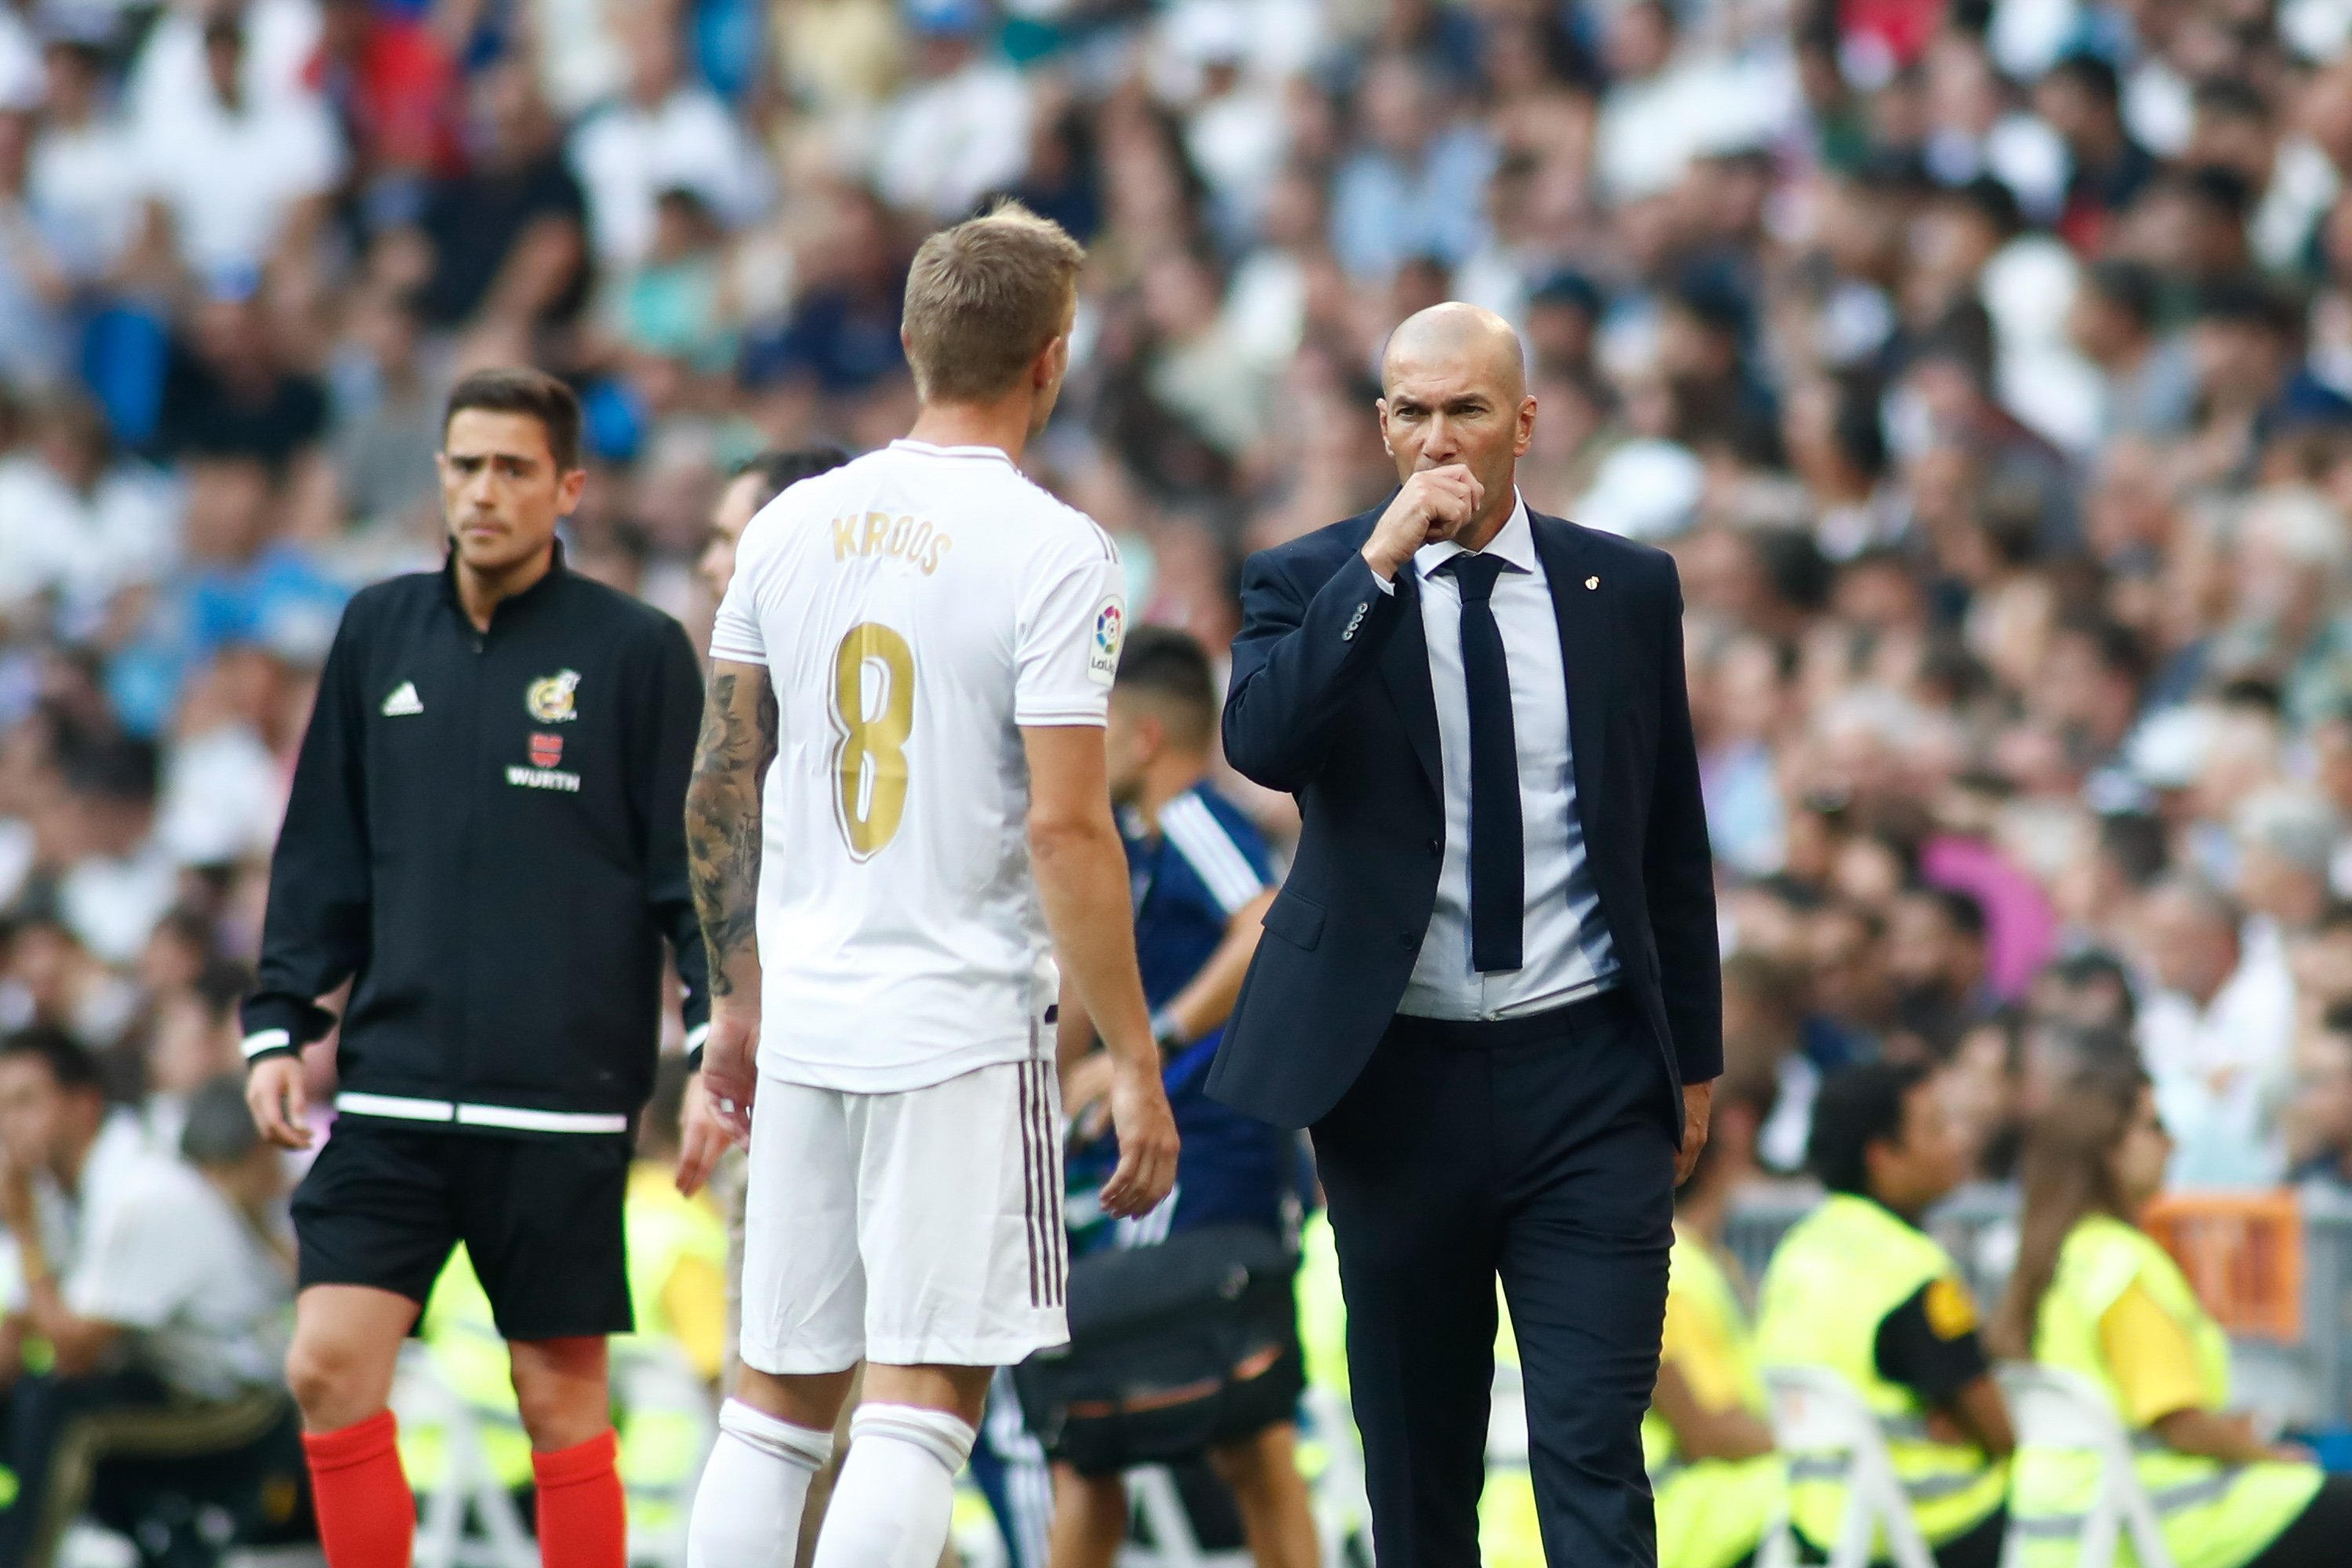 Acord total amb Zidane per deixar el Reial Madrid pel PSG, Florentino Pérez posarà fàcil la venda